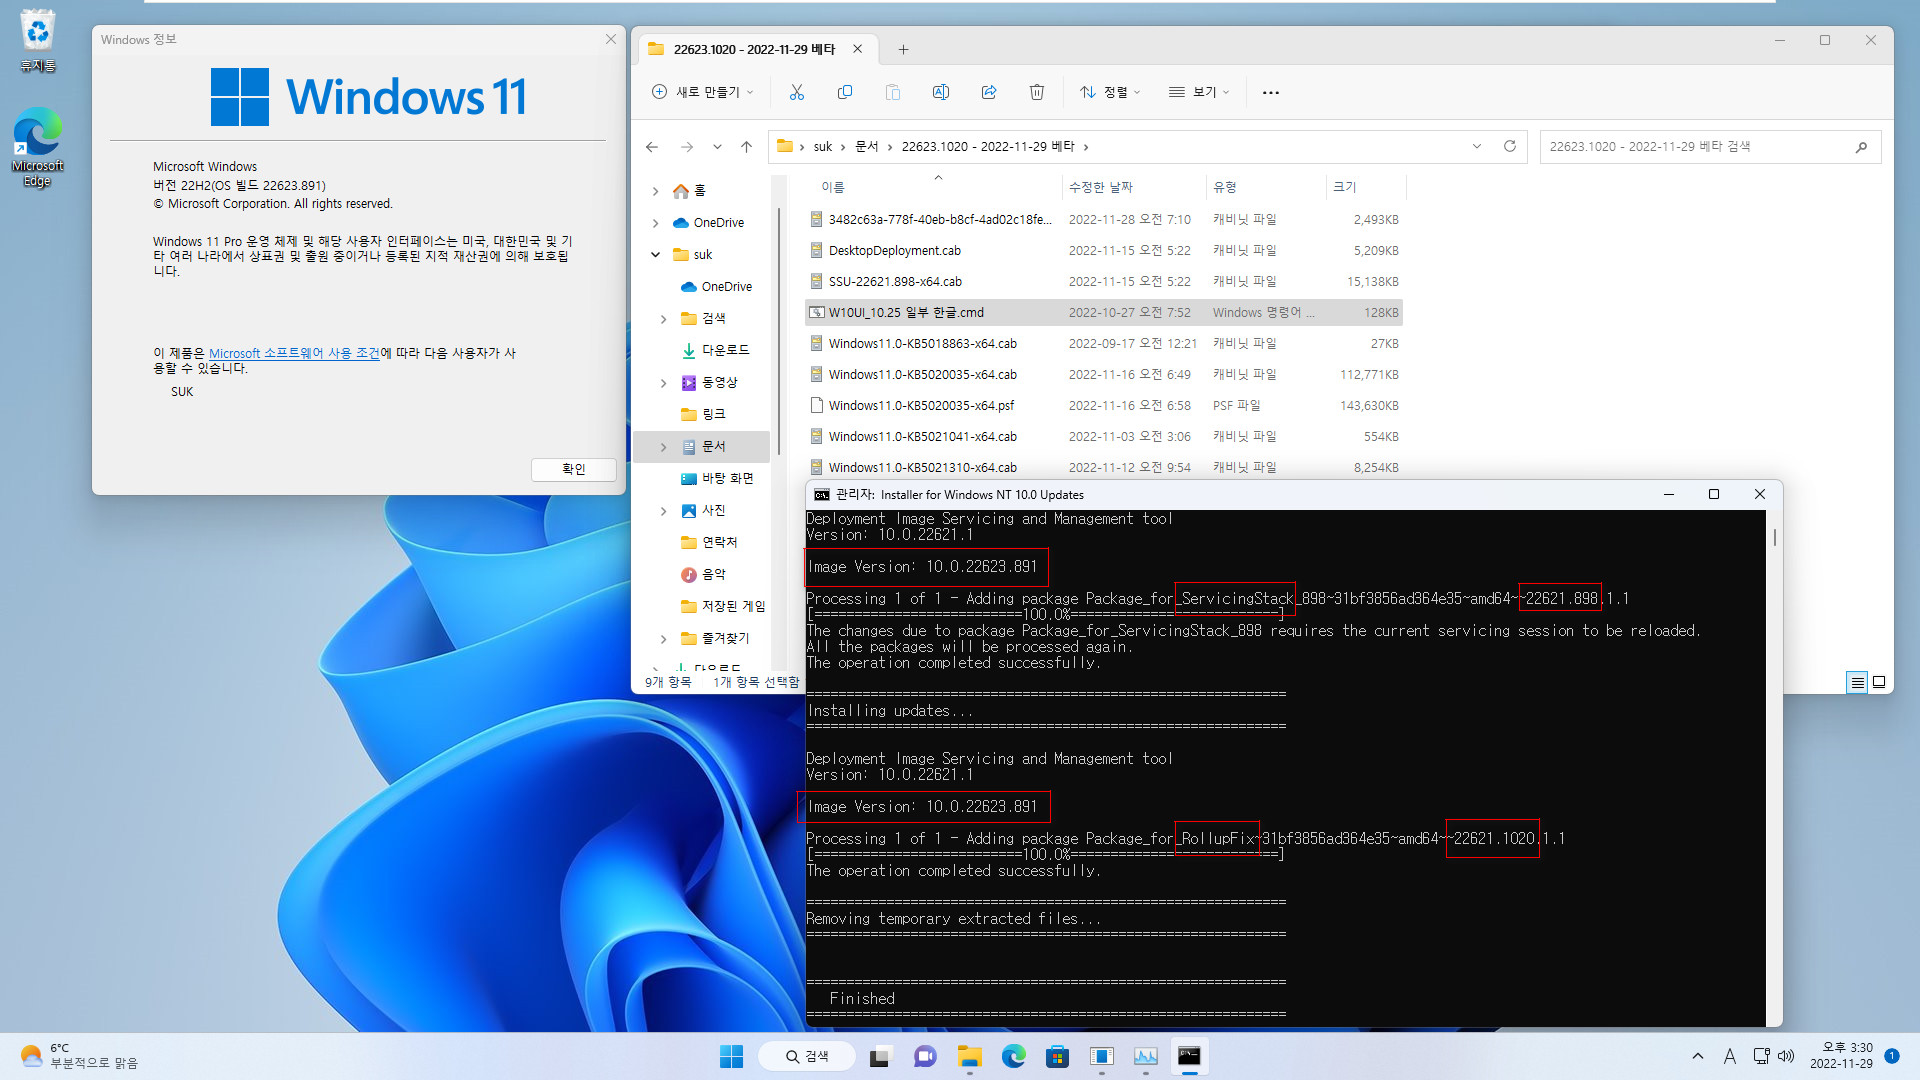 2022-11-29 화요일 - 베타 채널 - Windows 11 버전 22H2, 빌드 22623.1020 + 22621.1020 - 누적 업데이트 KB5020035 - vmware에 설치 테스트 2022-11-29_153052.jpg